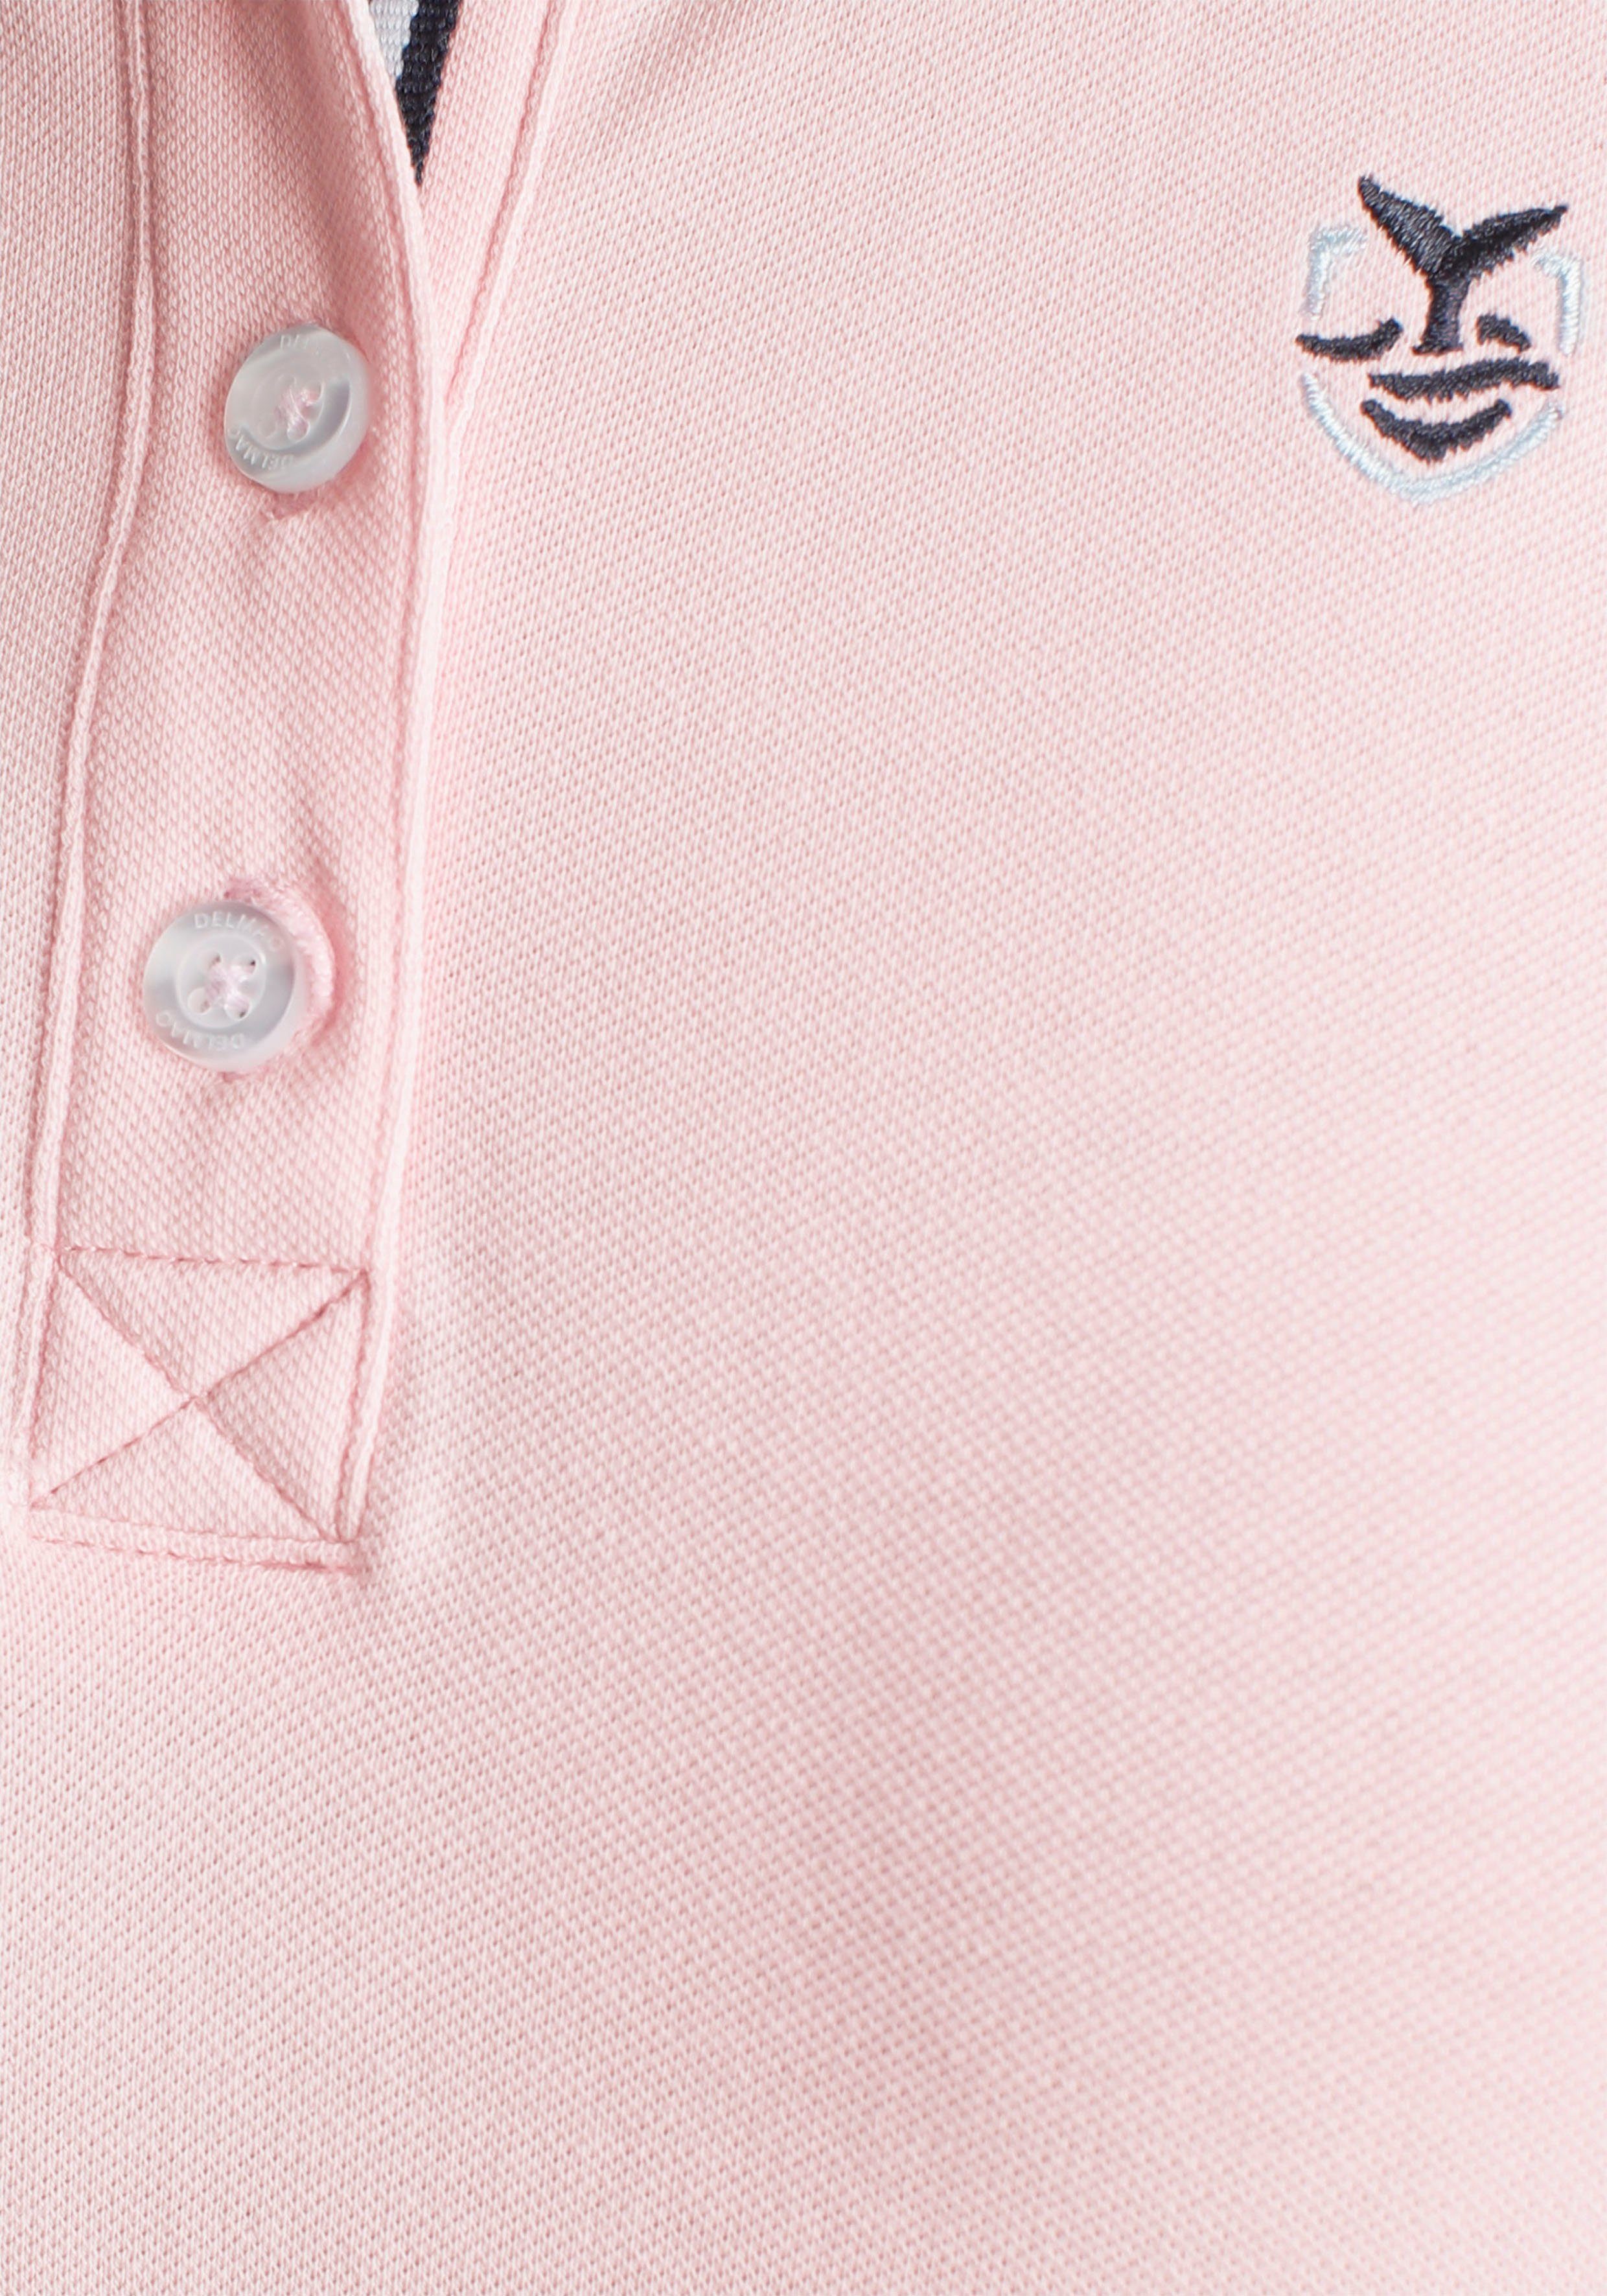 DELMAO Poloshirt klassischer in NEUE - MARKE! verschiedenen Farben rosa in Form